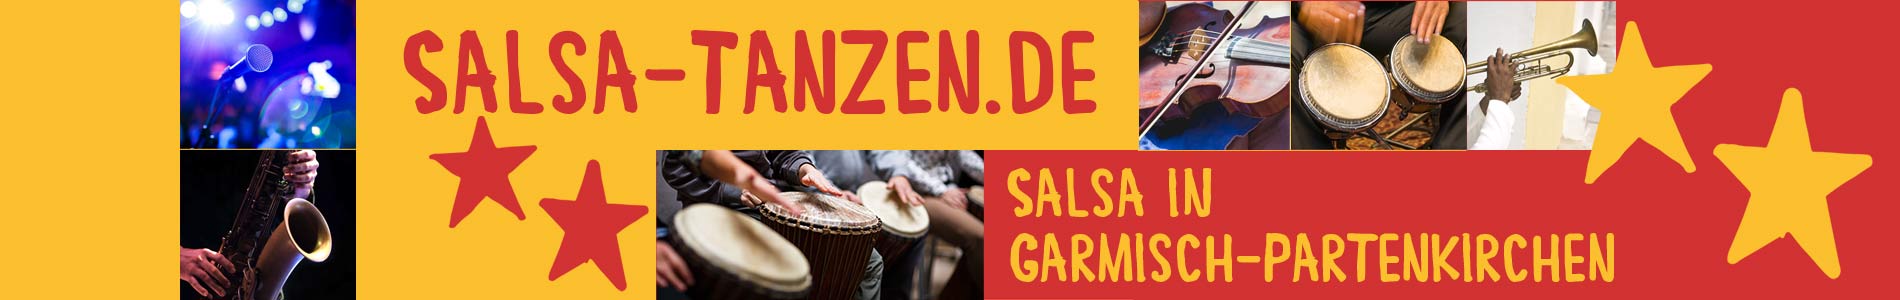 Salsa in Garmisch-Partenkirchen – Salsa lernen und tanzen, Tanzkurse, Partys, Veranstaltungen